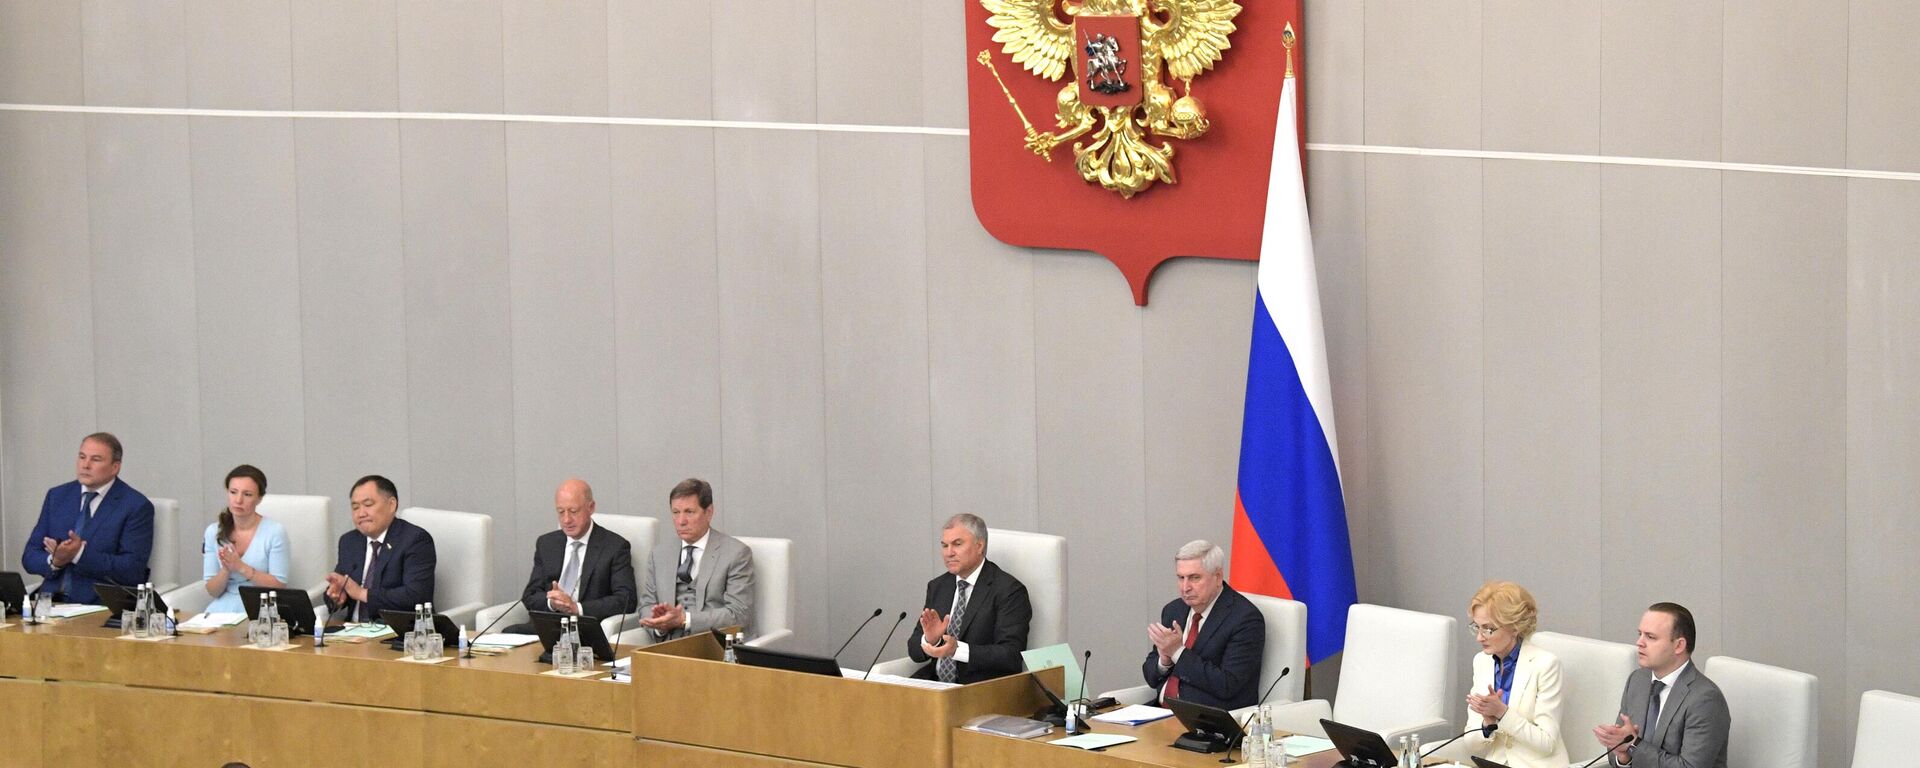 Vyacheslav Volodin, presidente da Duma, câmara baixa do Parlamento russo, fala em sessão plenária do órgão, foto publicada em 28 de junho de 2022 - Sputnik Brasil, 1920, 03.05.2023